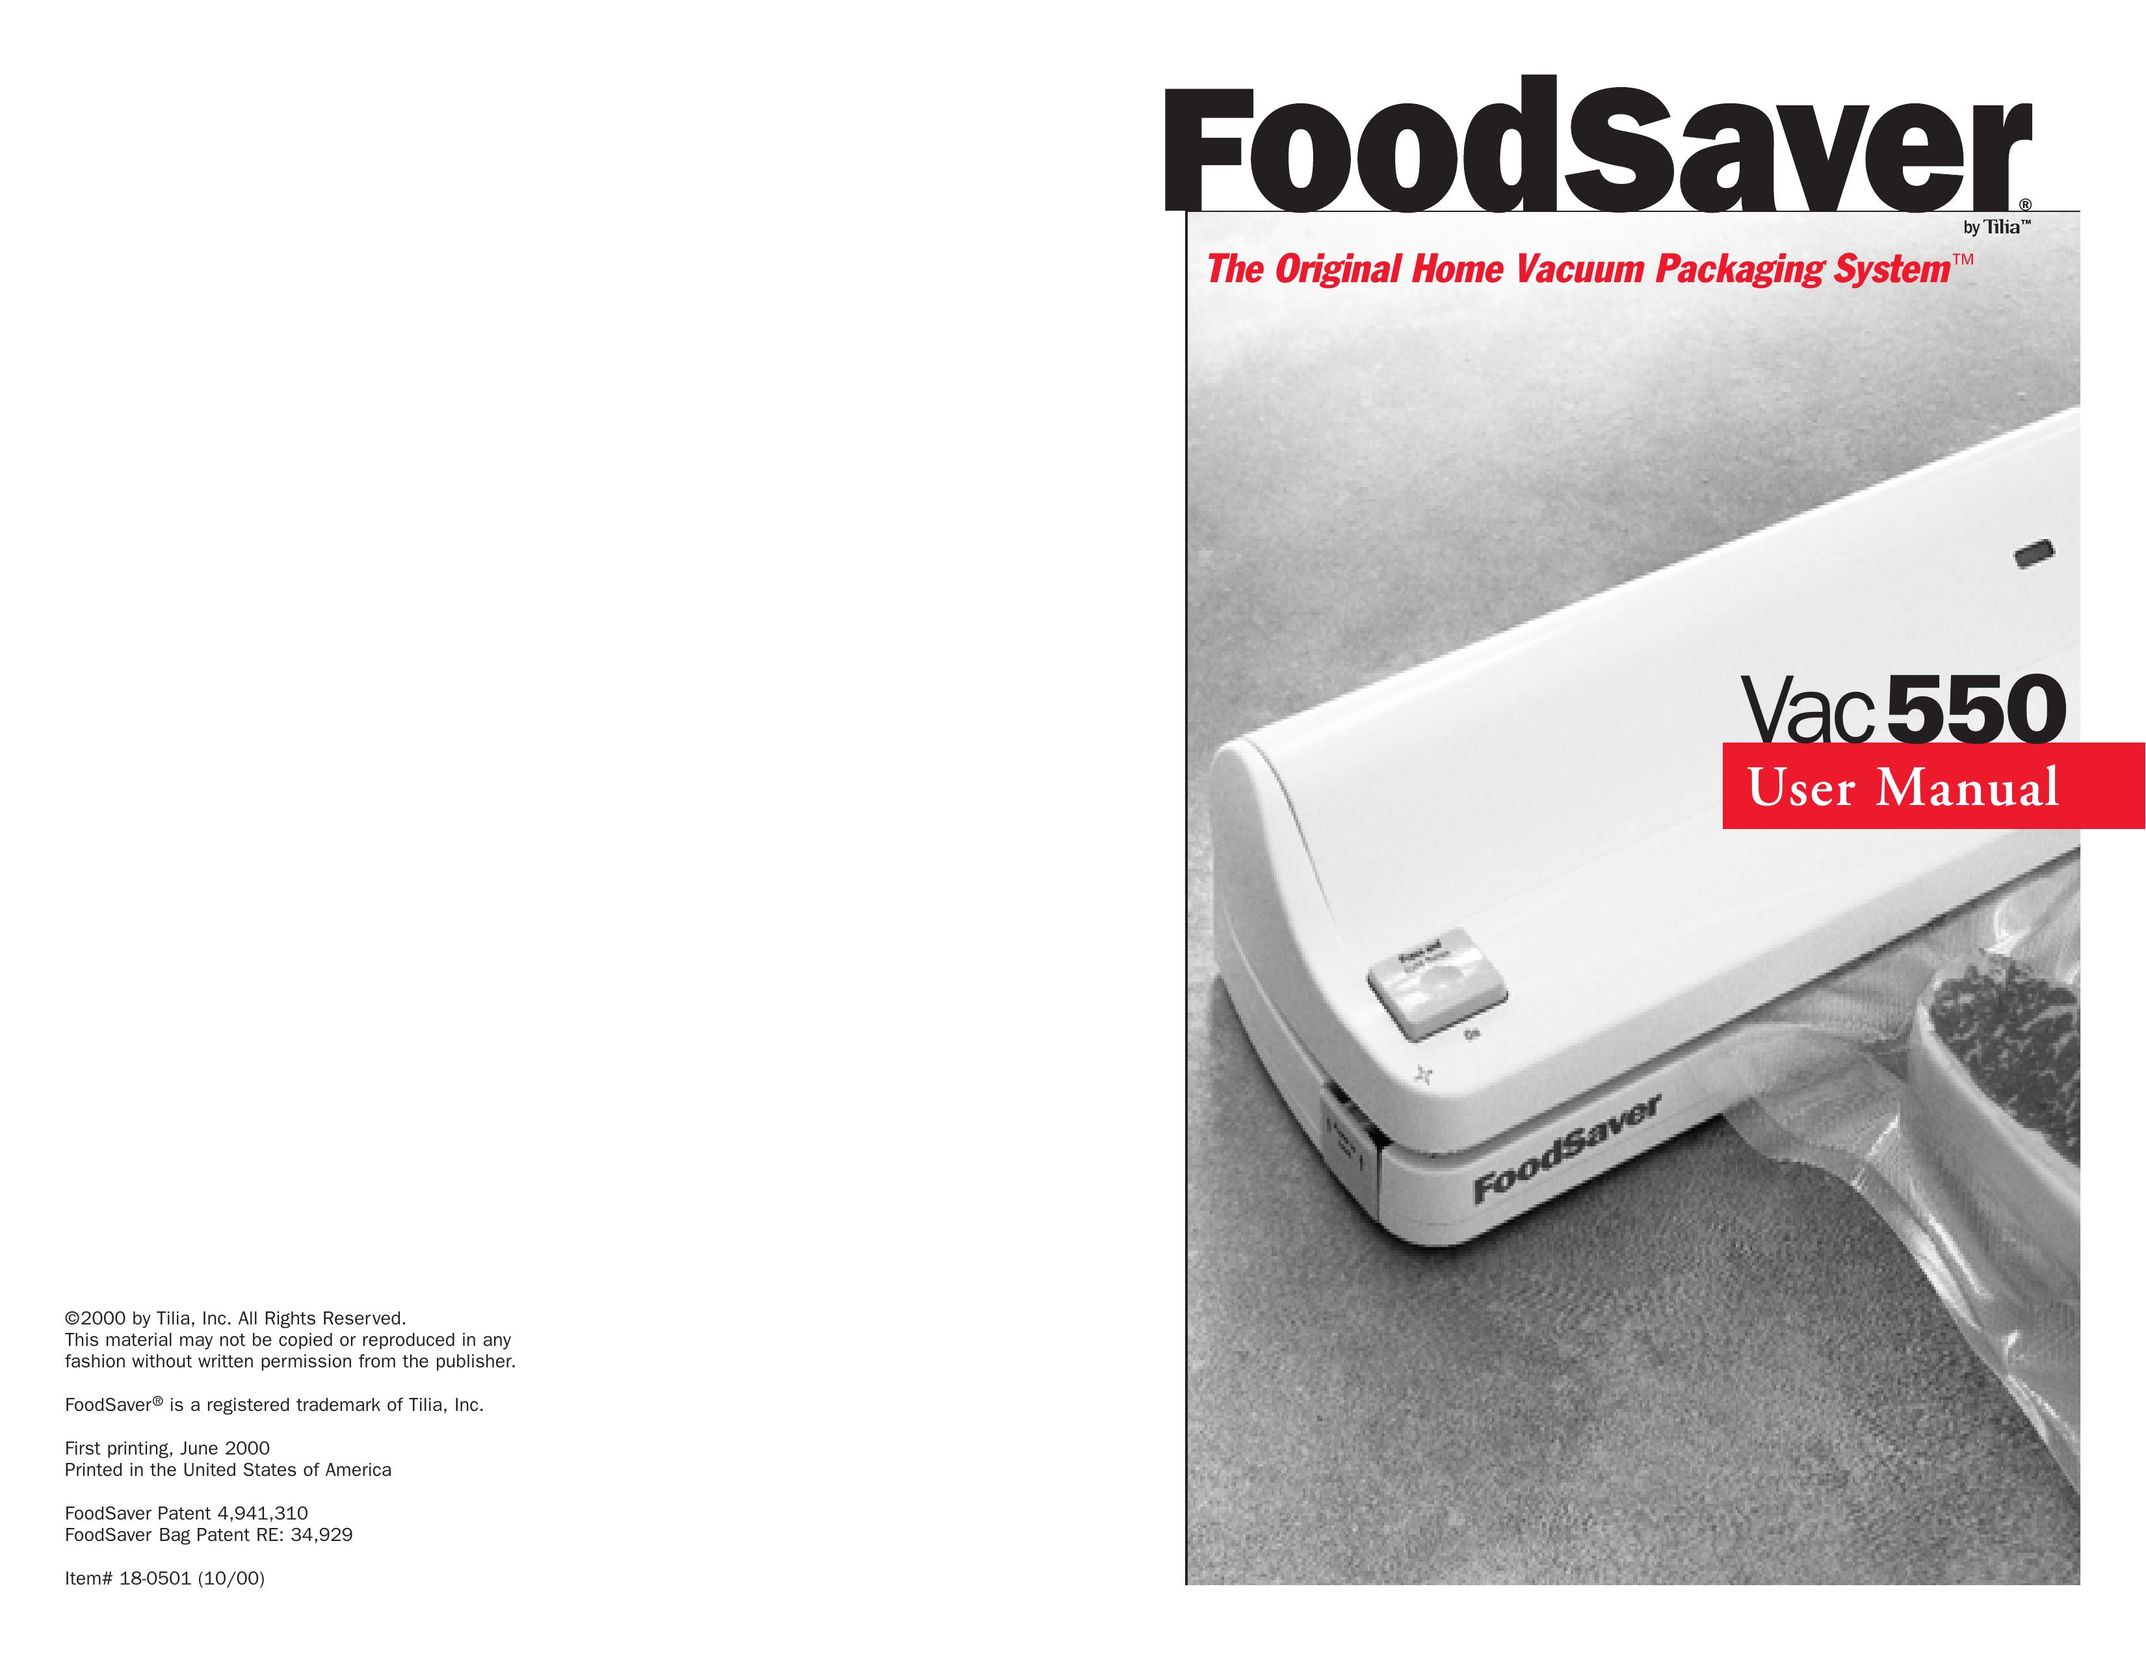 FoodSaver Vac 550 Food Saver User Manual